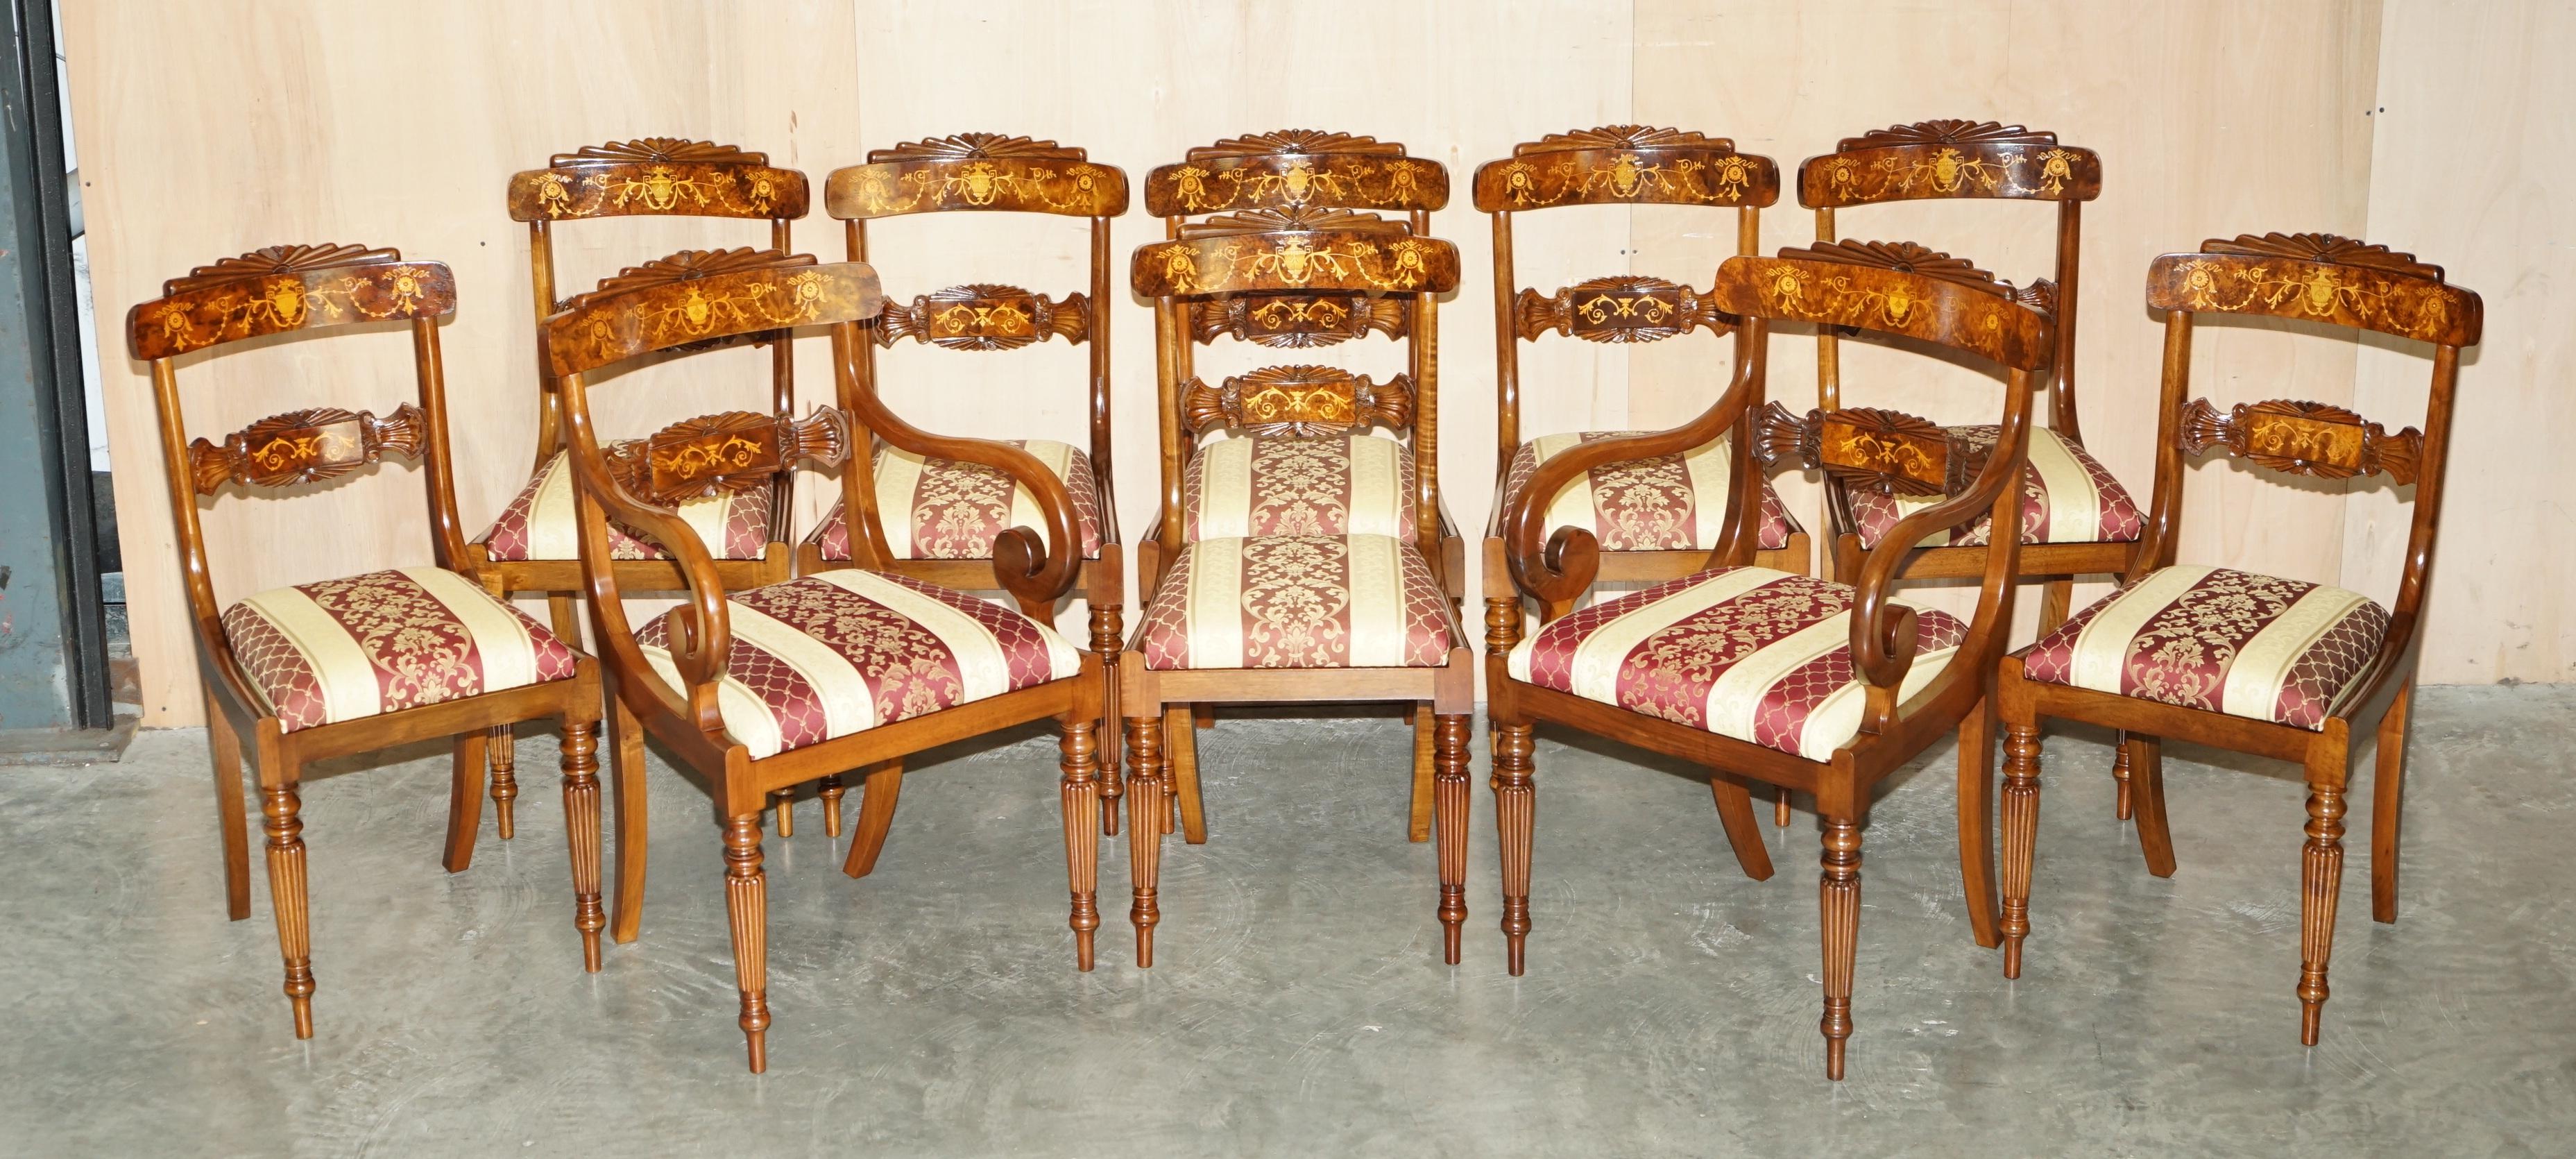 Royal House Antiques

Royal House Antiques freut sich, diesen absolut exquisiten Esstisch im Regency-Stil mit zwei Sockeln aus Wurzelnussholz und zehn dazu passenden Stühlen mit Intarsien, die kunstvoll geschnitzte Rahmen haben, zum Verkauf